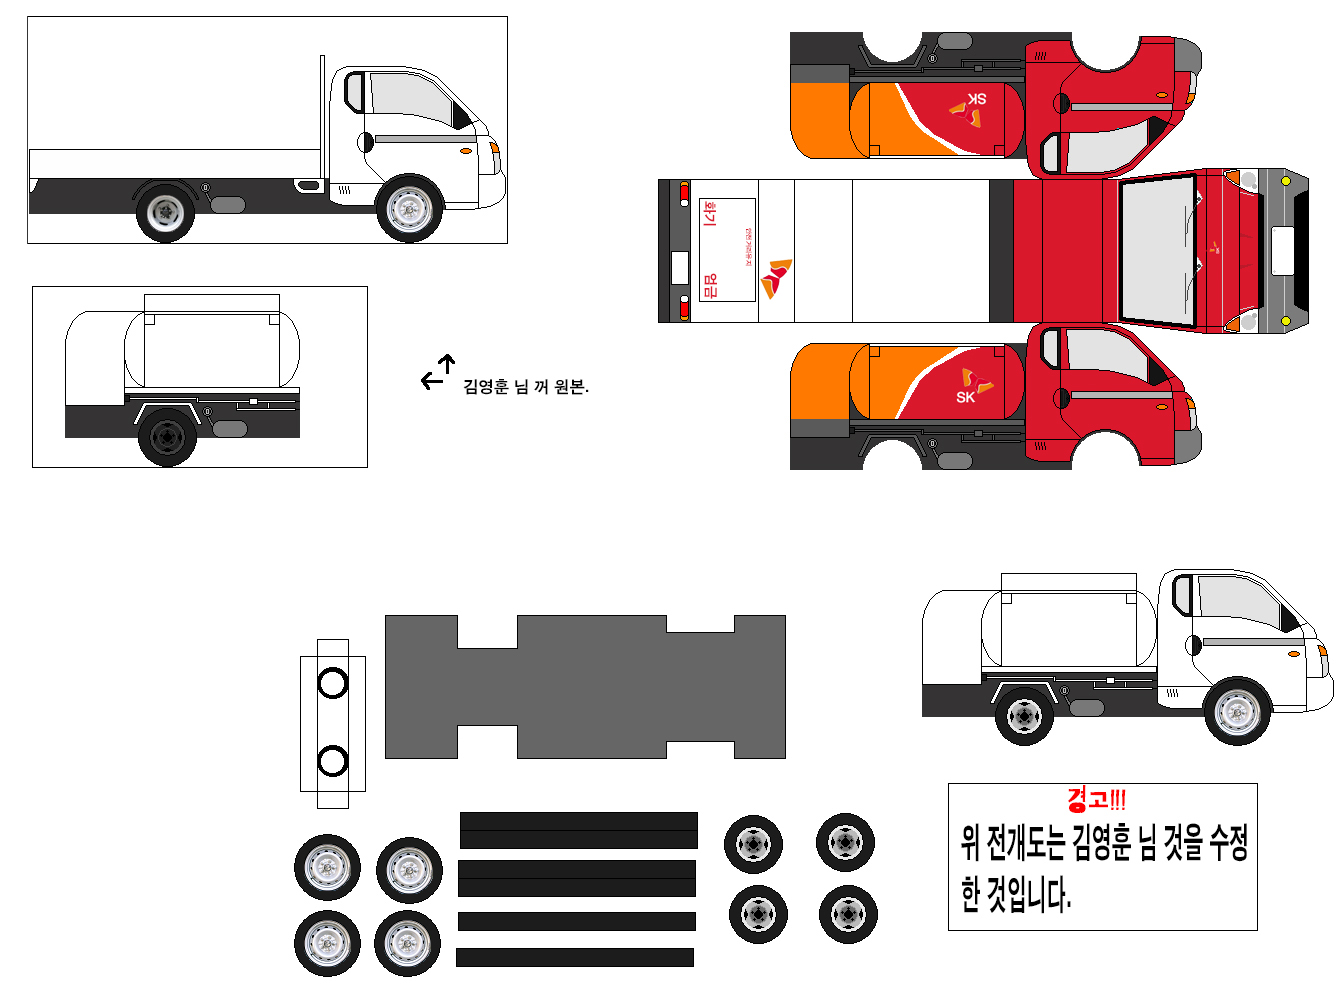 현대 포터2 초장축 슈퍼캐빈 카고트럭 유조차(2004_) 수정...2.jpg